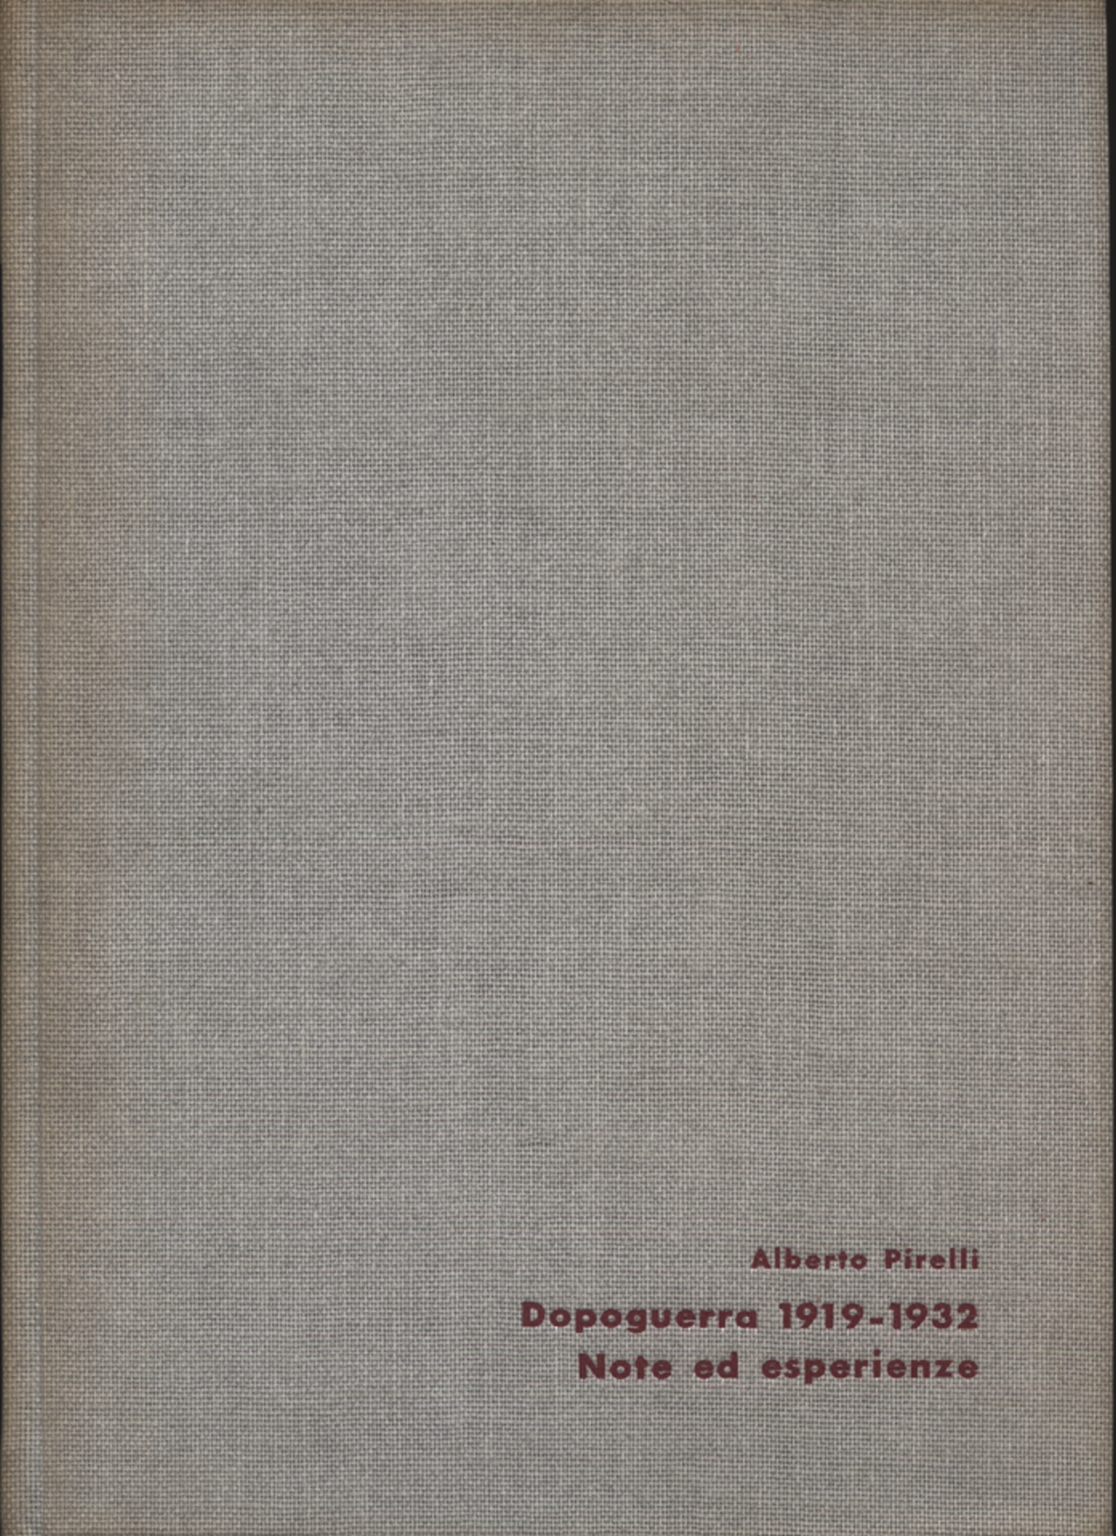 Après La Guerre, 1919-1932, Alberto Pirelli